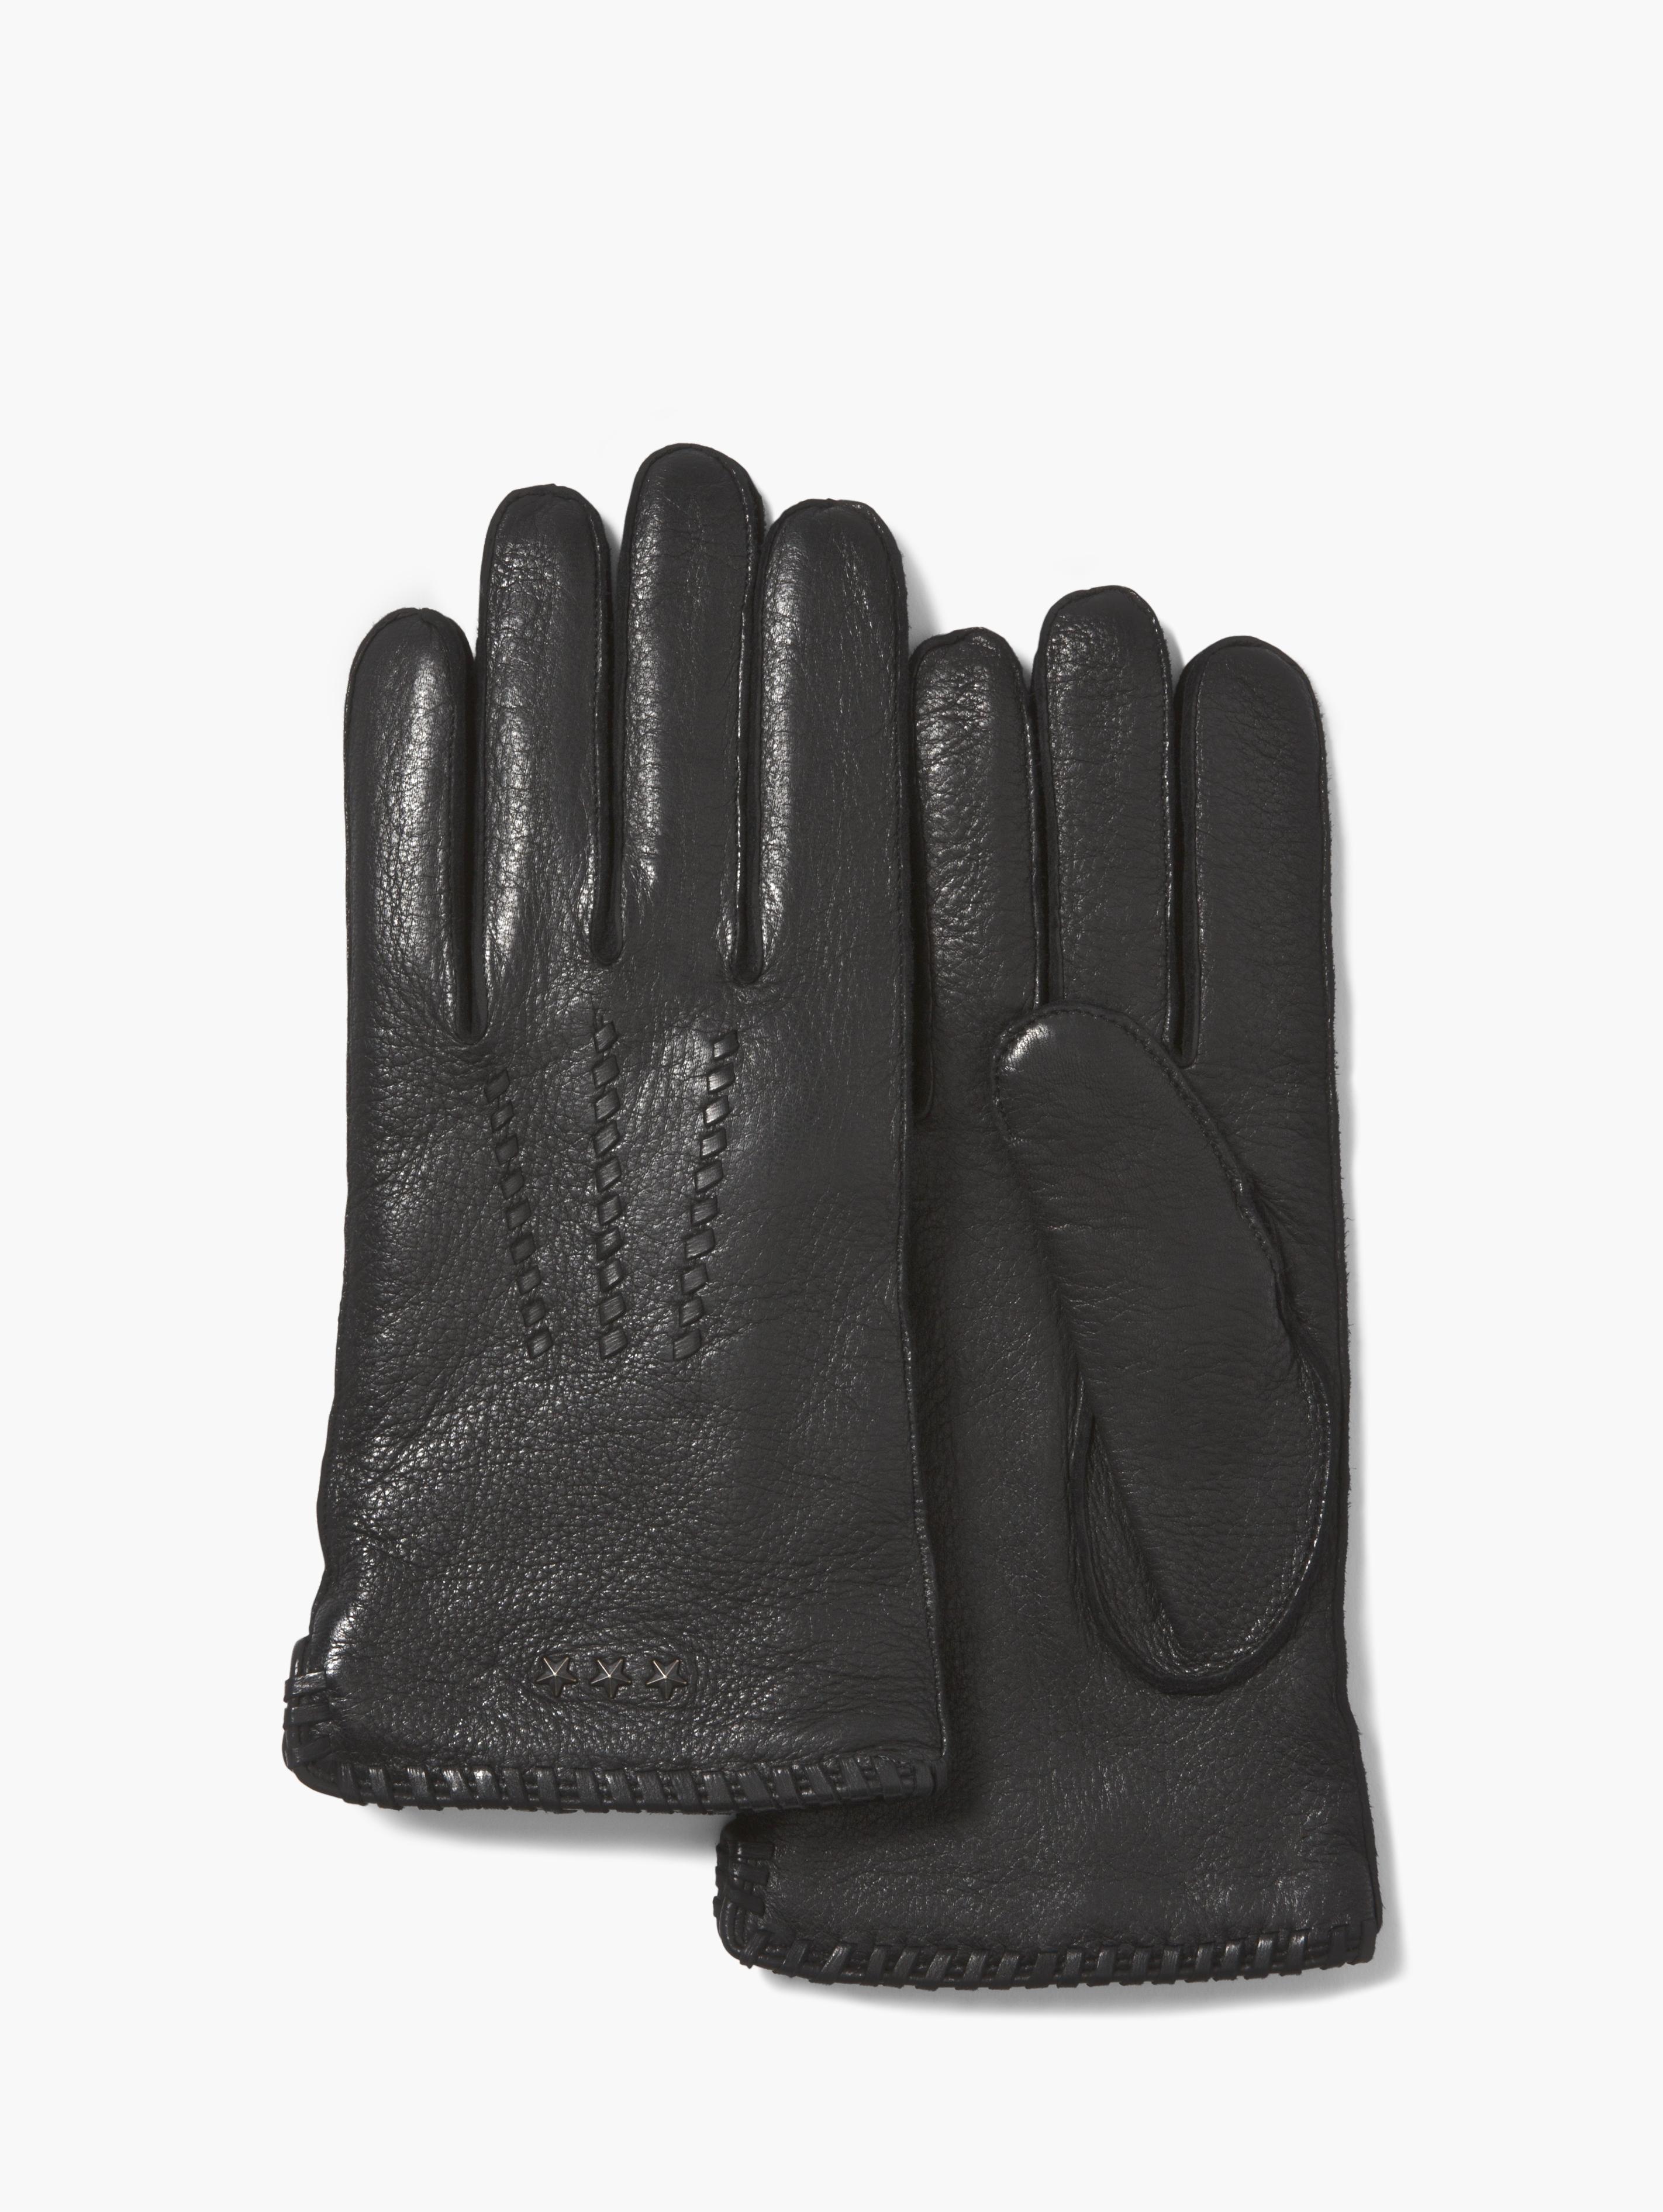 John Varvatos Deer Skin Leather Gloves